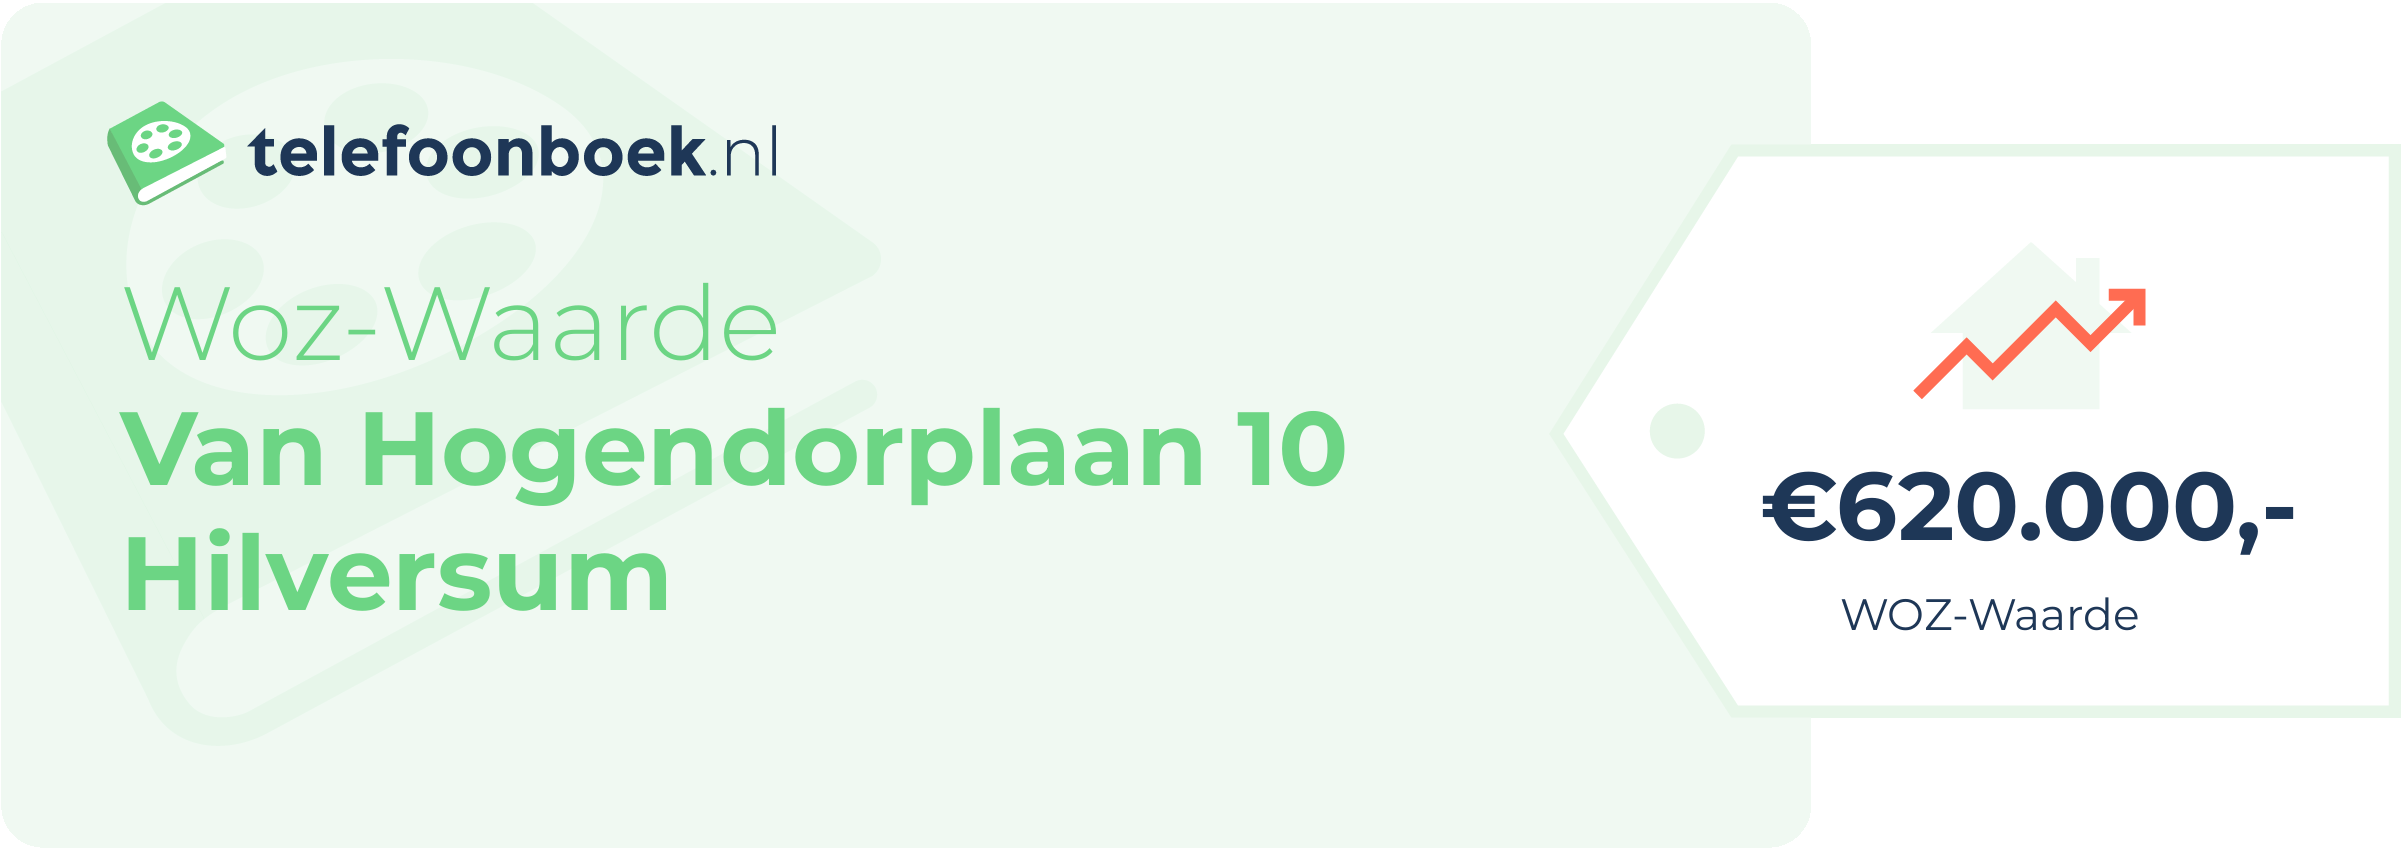 WOZ-waarde Van Hogendorplaan 10 Hilversum